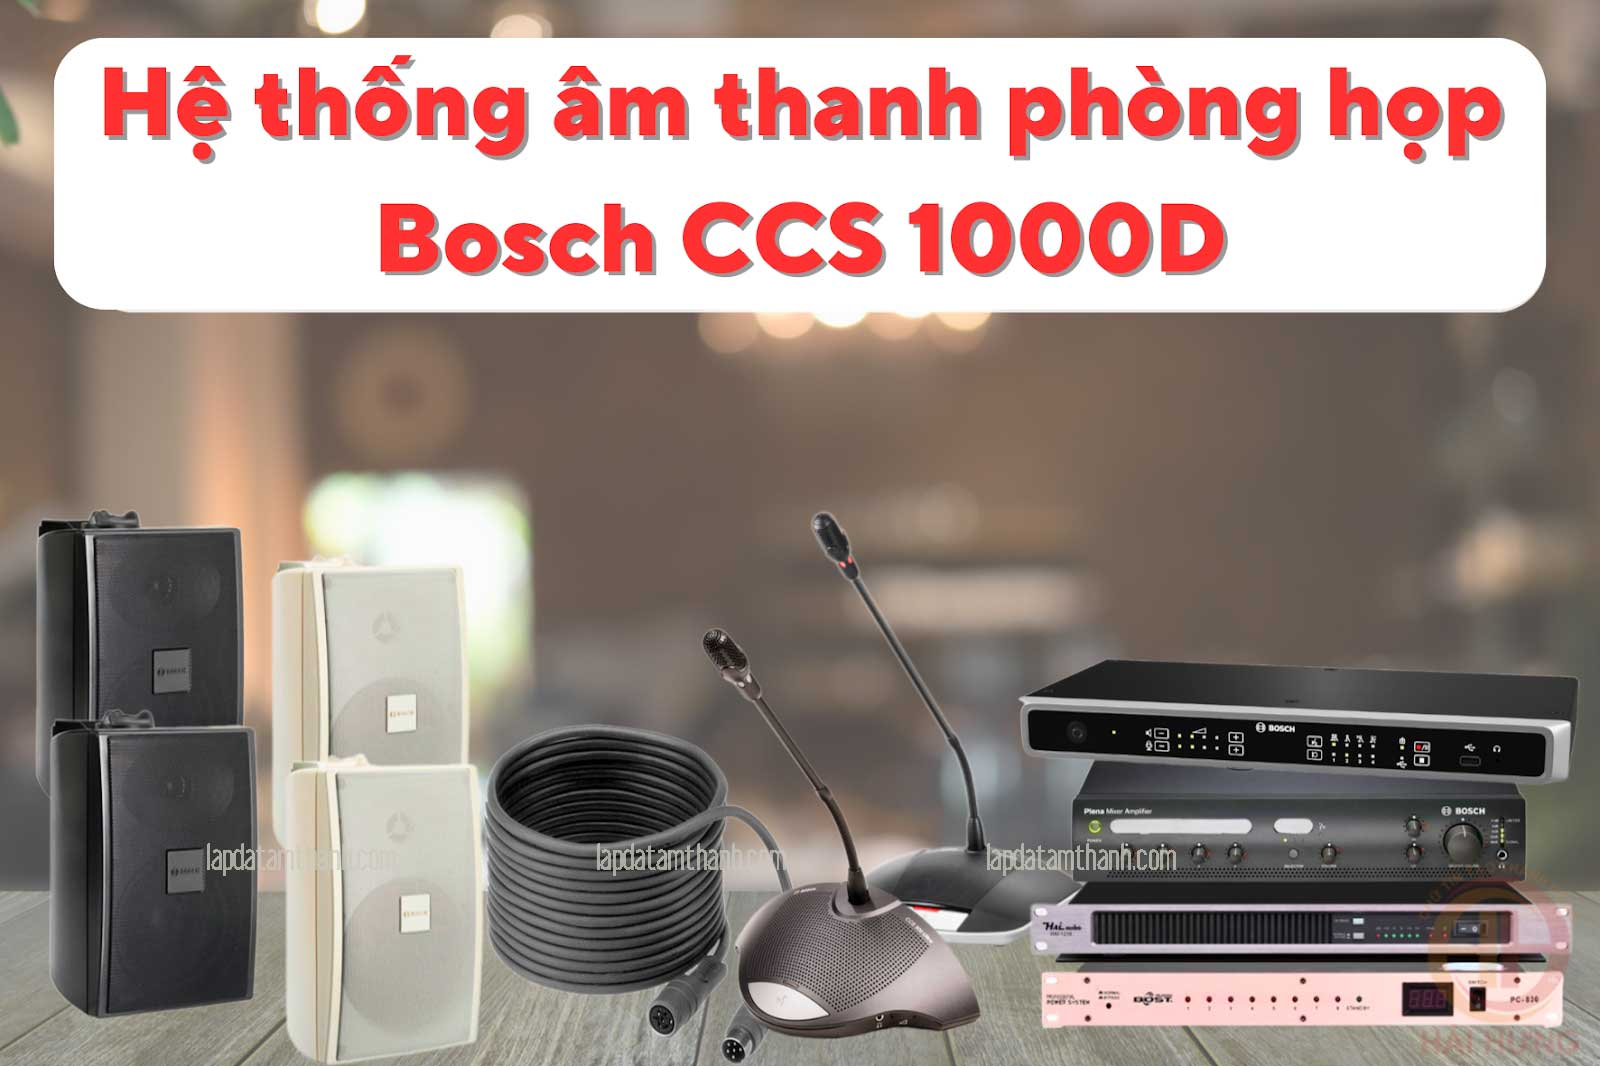 Hệ thống âm thanh phòng họp Bosch CCS 1000D